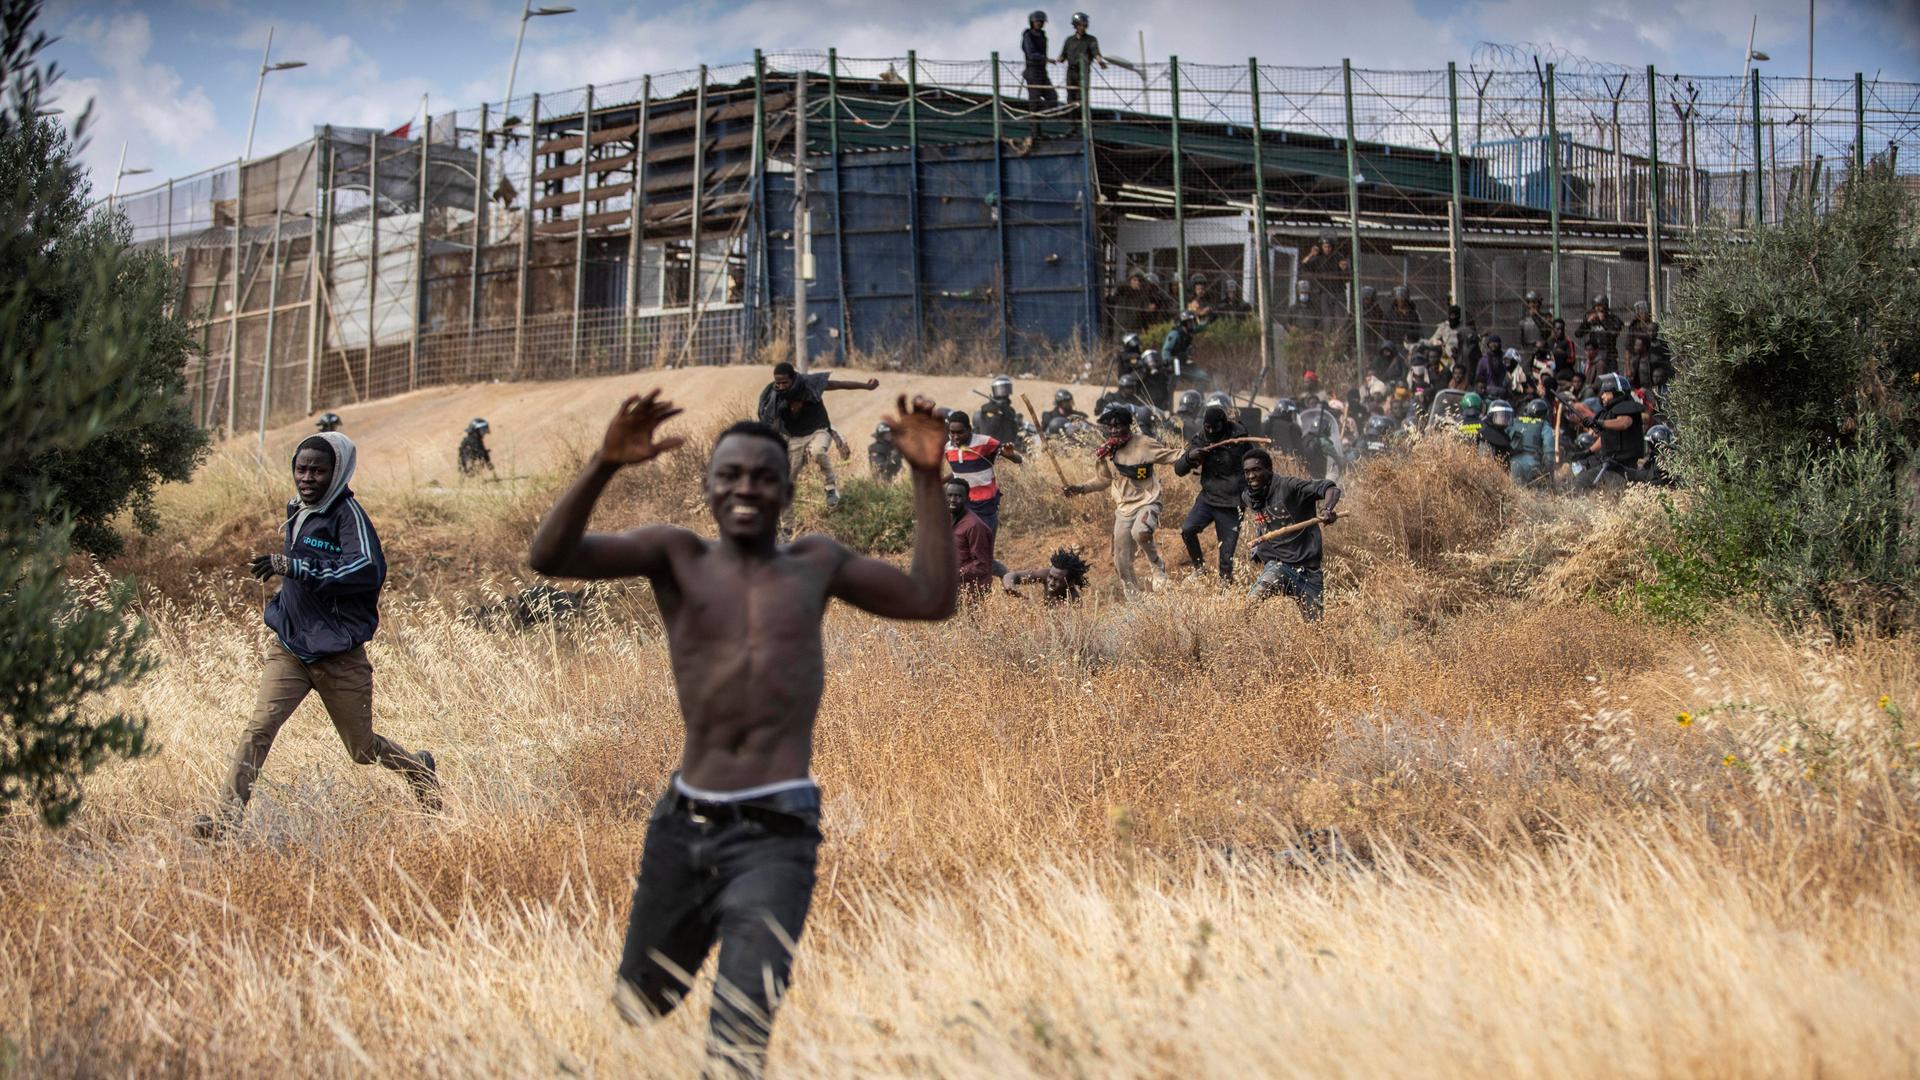 Migranten rennen auf spanischem Boden, nachdem sie den Grenzzaun zwischen Melilla und Marokko überwunden haben. Im Hintergrund ist der Zaun zu sehen, an dem immer noch Migranten versuchen, an den Sicherheitskräften vorbeizukommen.